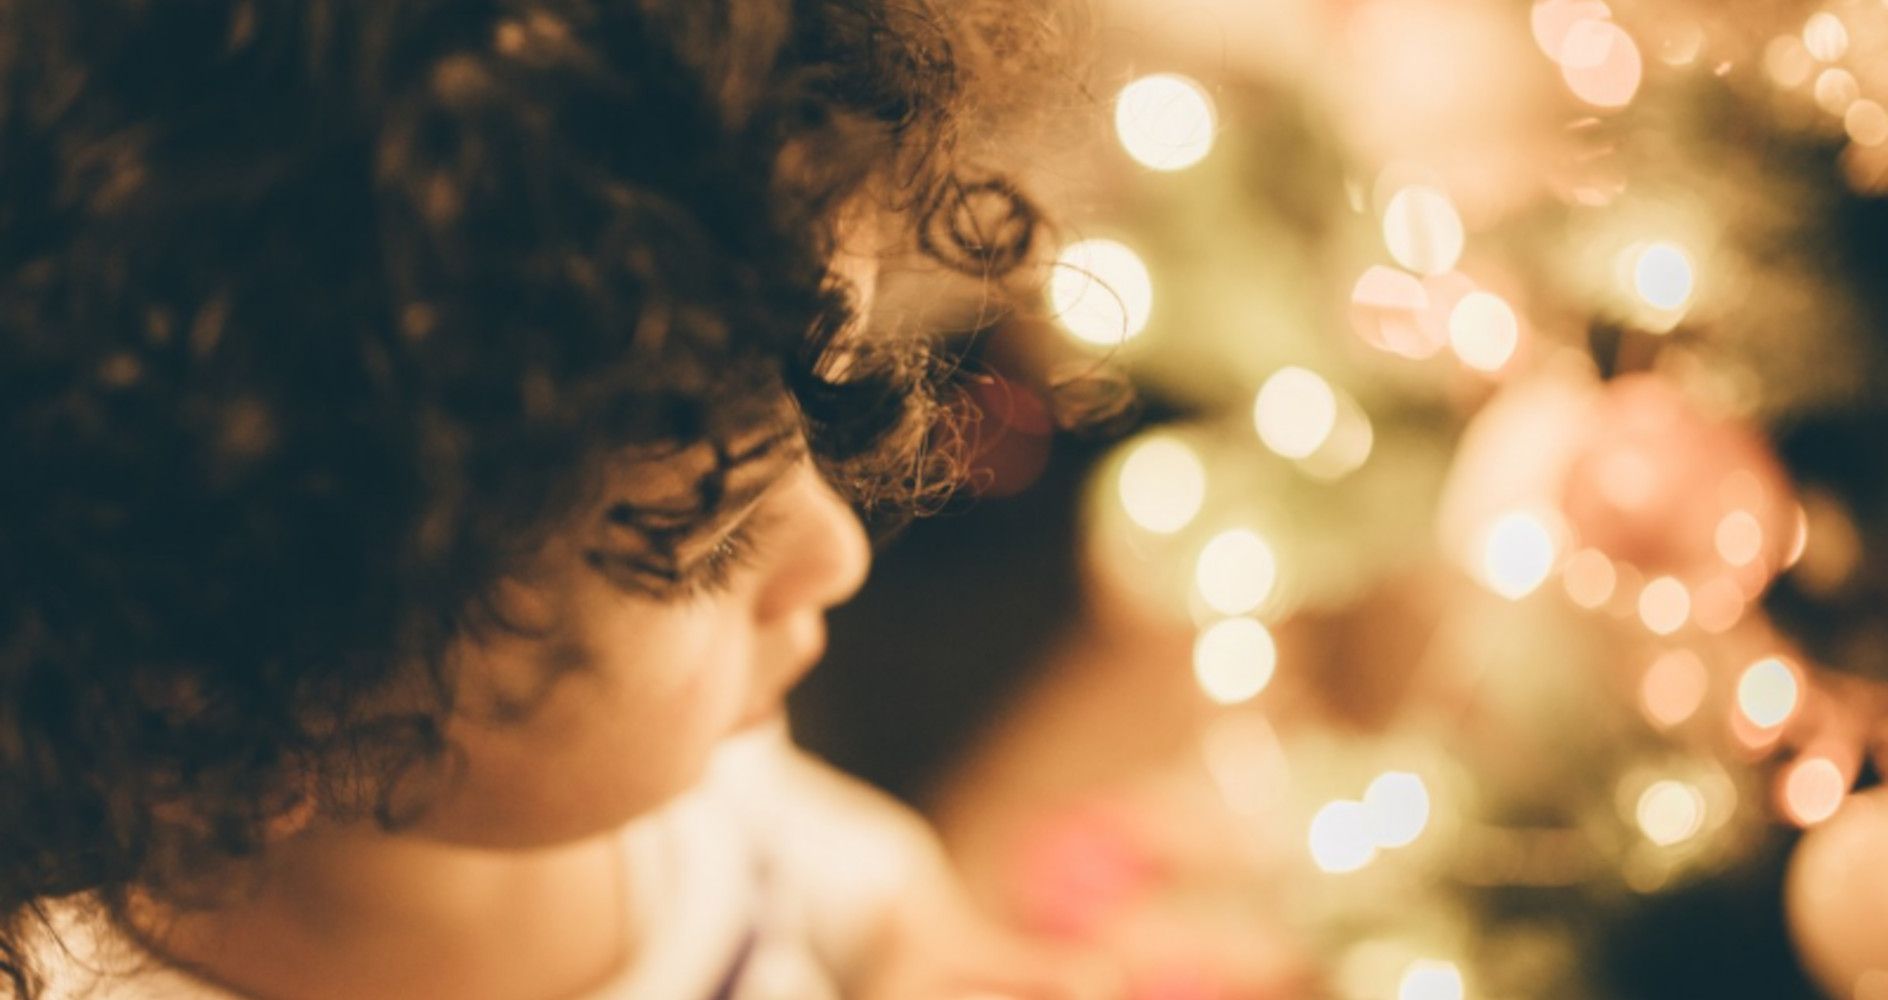 10 idees per a un Nadal amb valors i salut